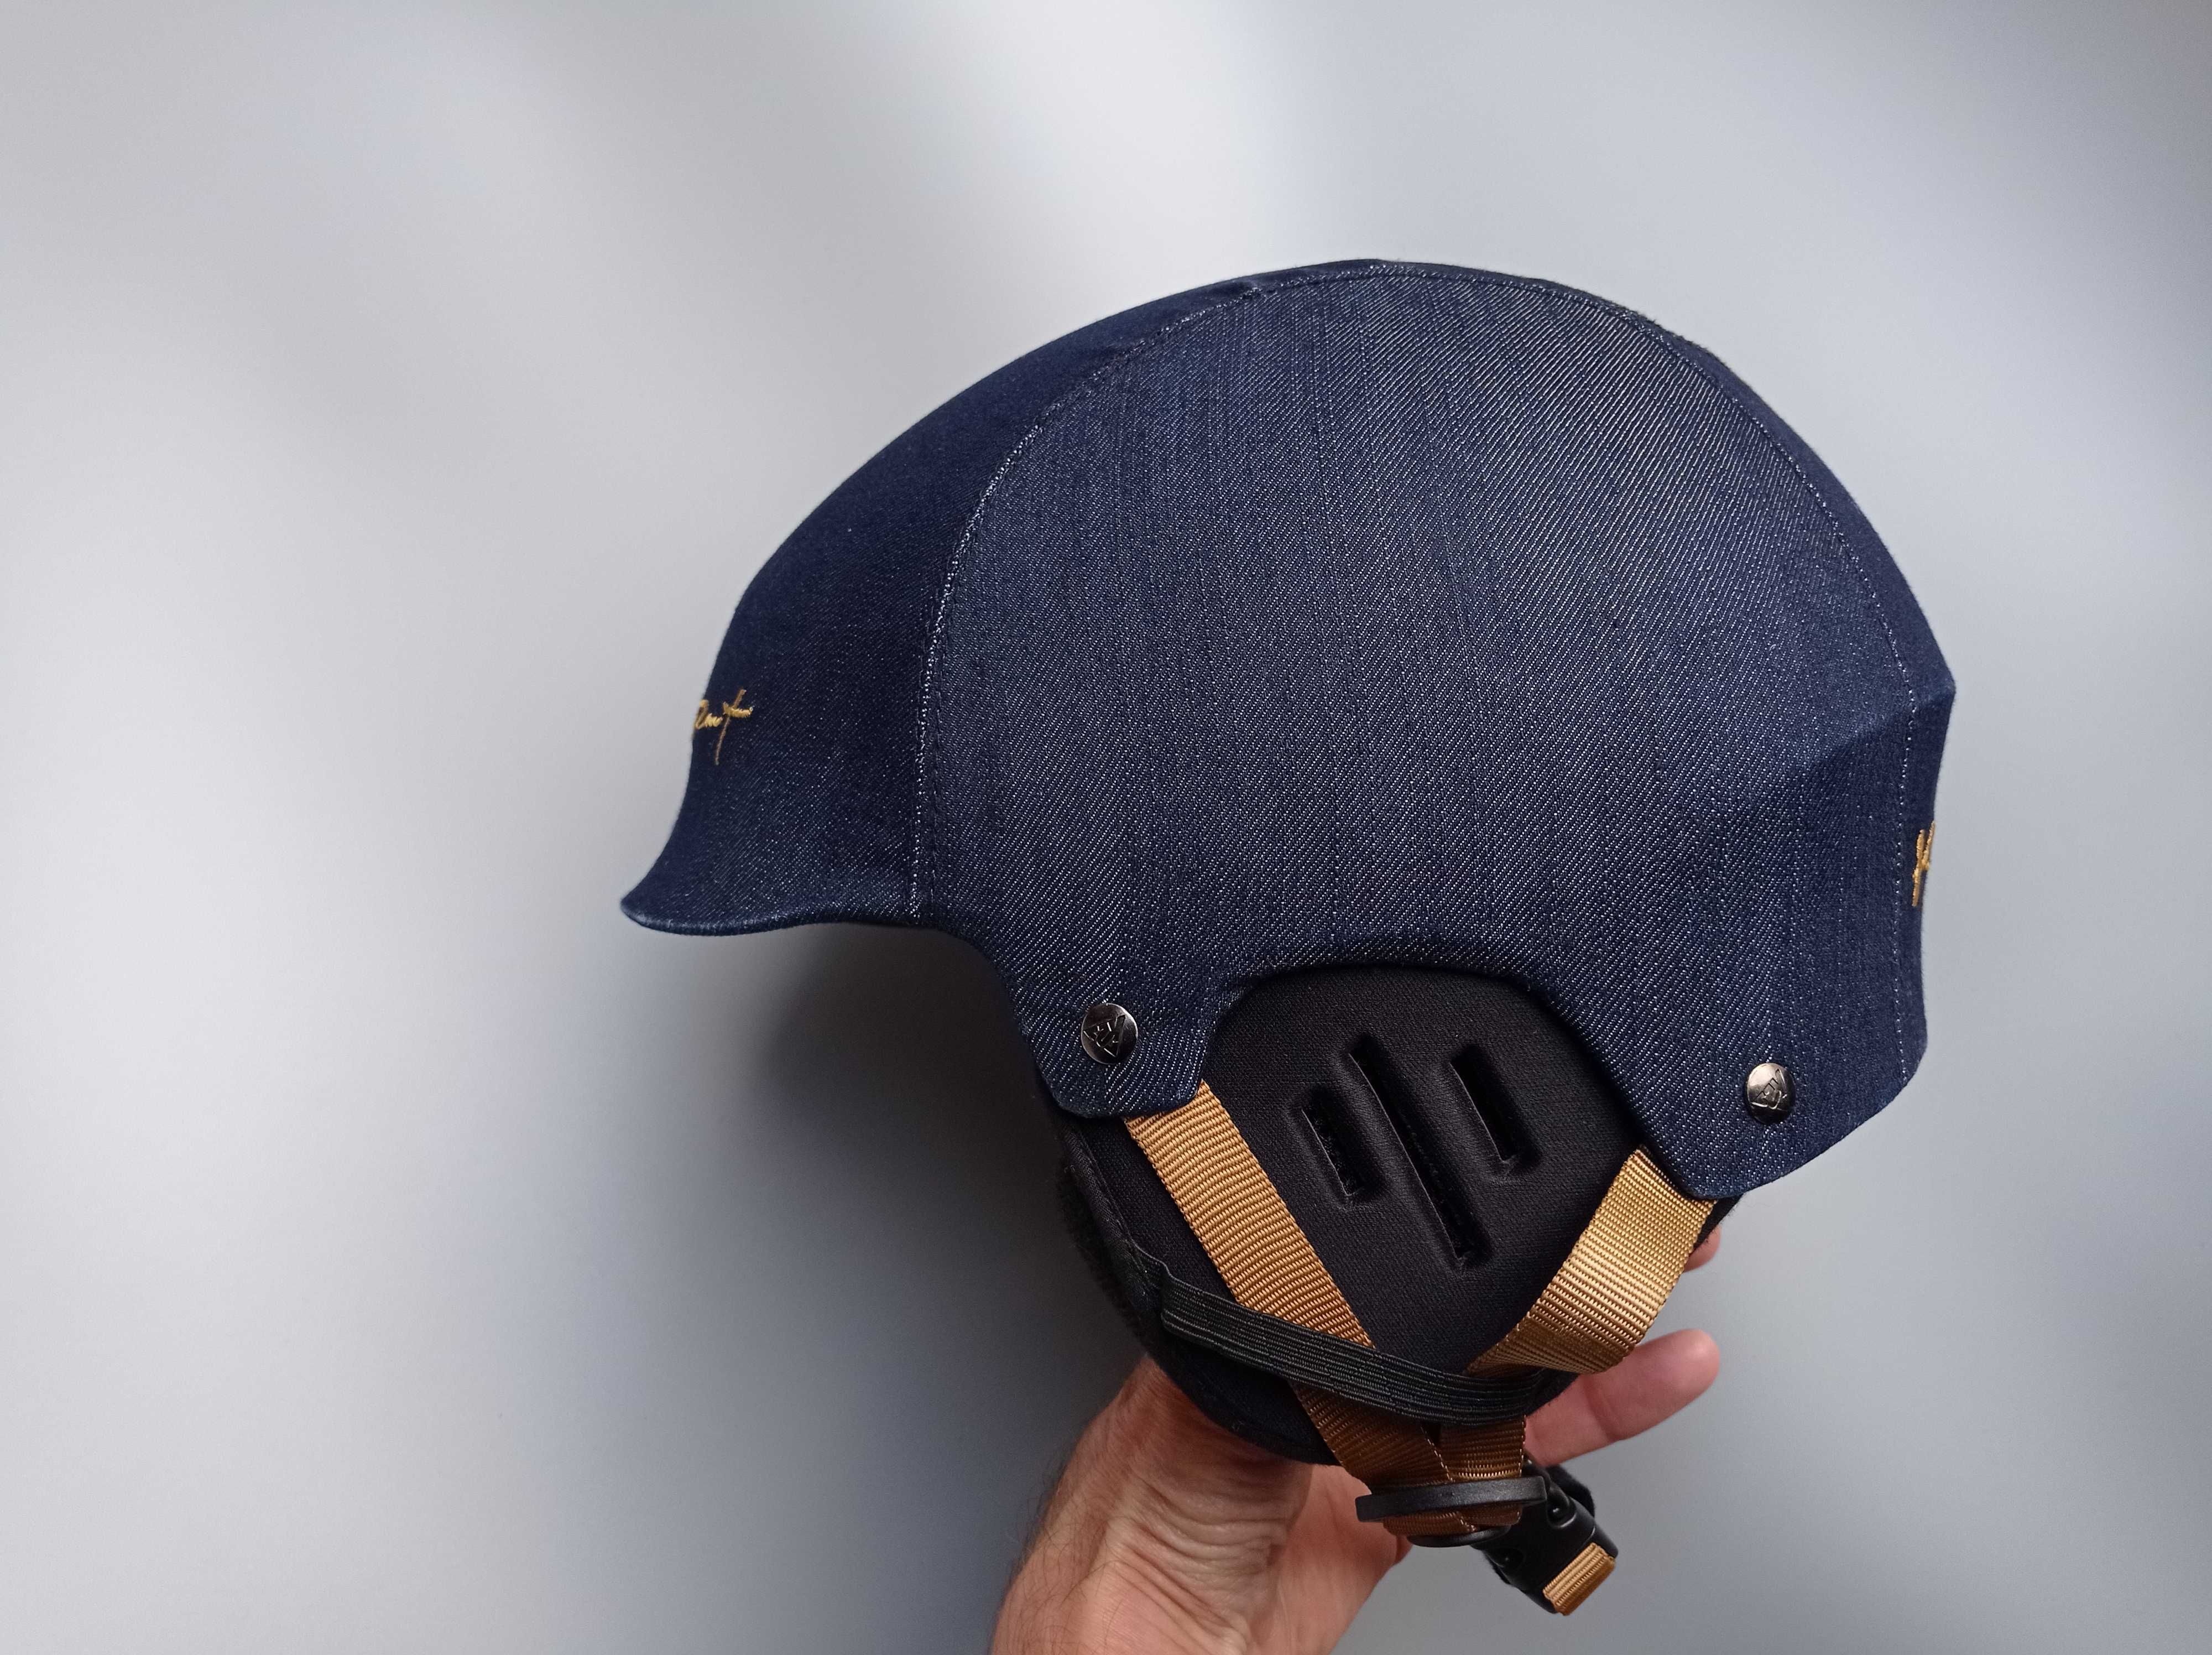 Горнолыжный шлем K2 Rant, размер L/XL 58-61см, Германия, зимний